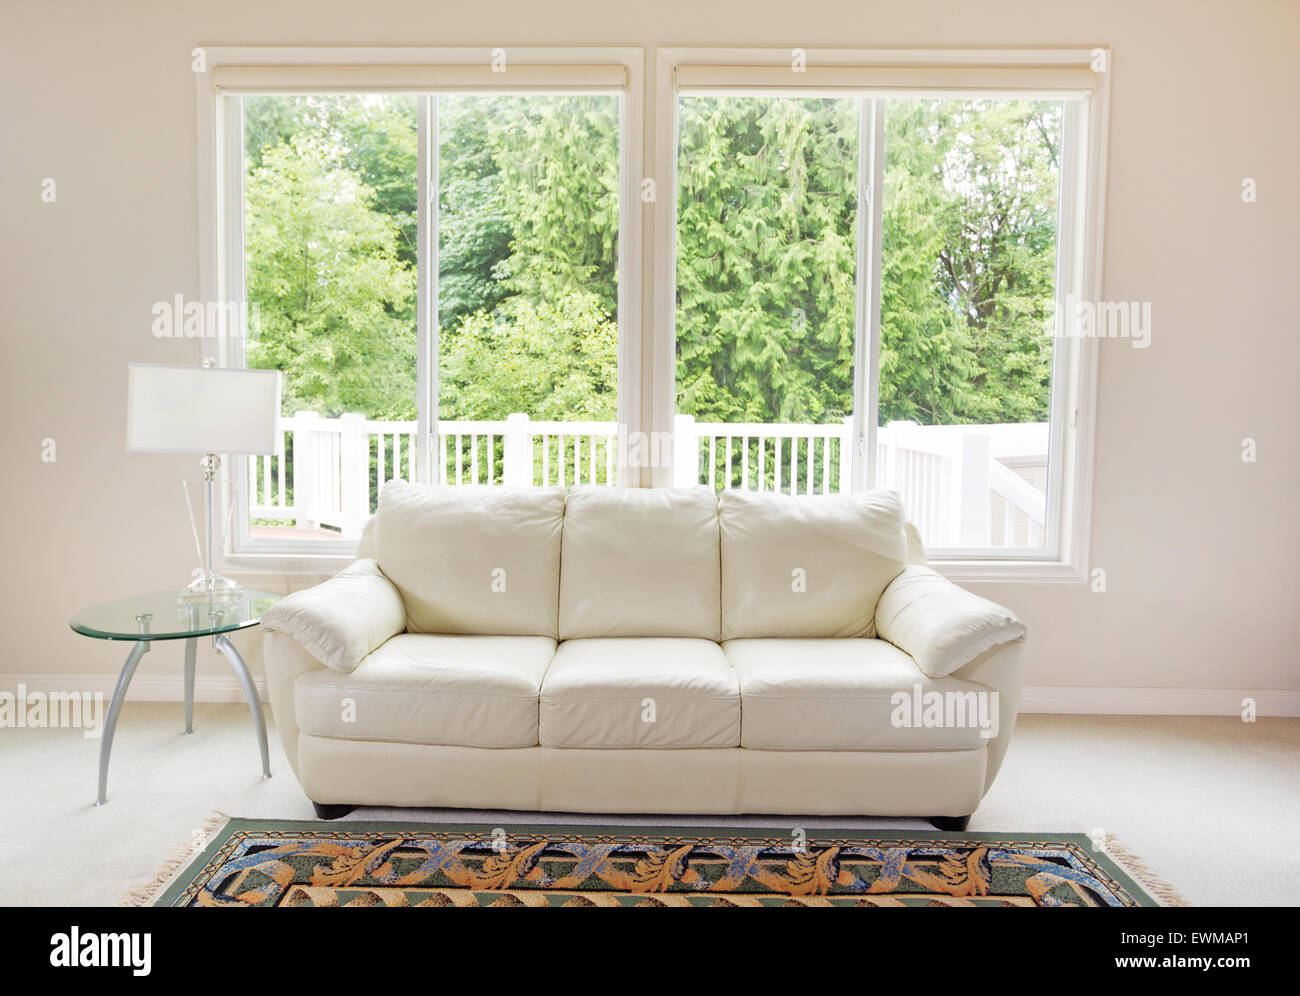 Saubere Familienzimmer mit weißen Ledercouch und große Fenster zeigen helle Grün der Bäume im Hintergrund. Stockfoto